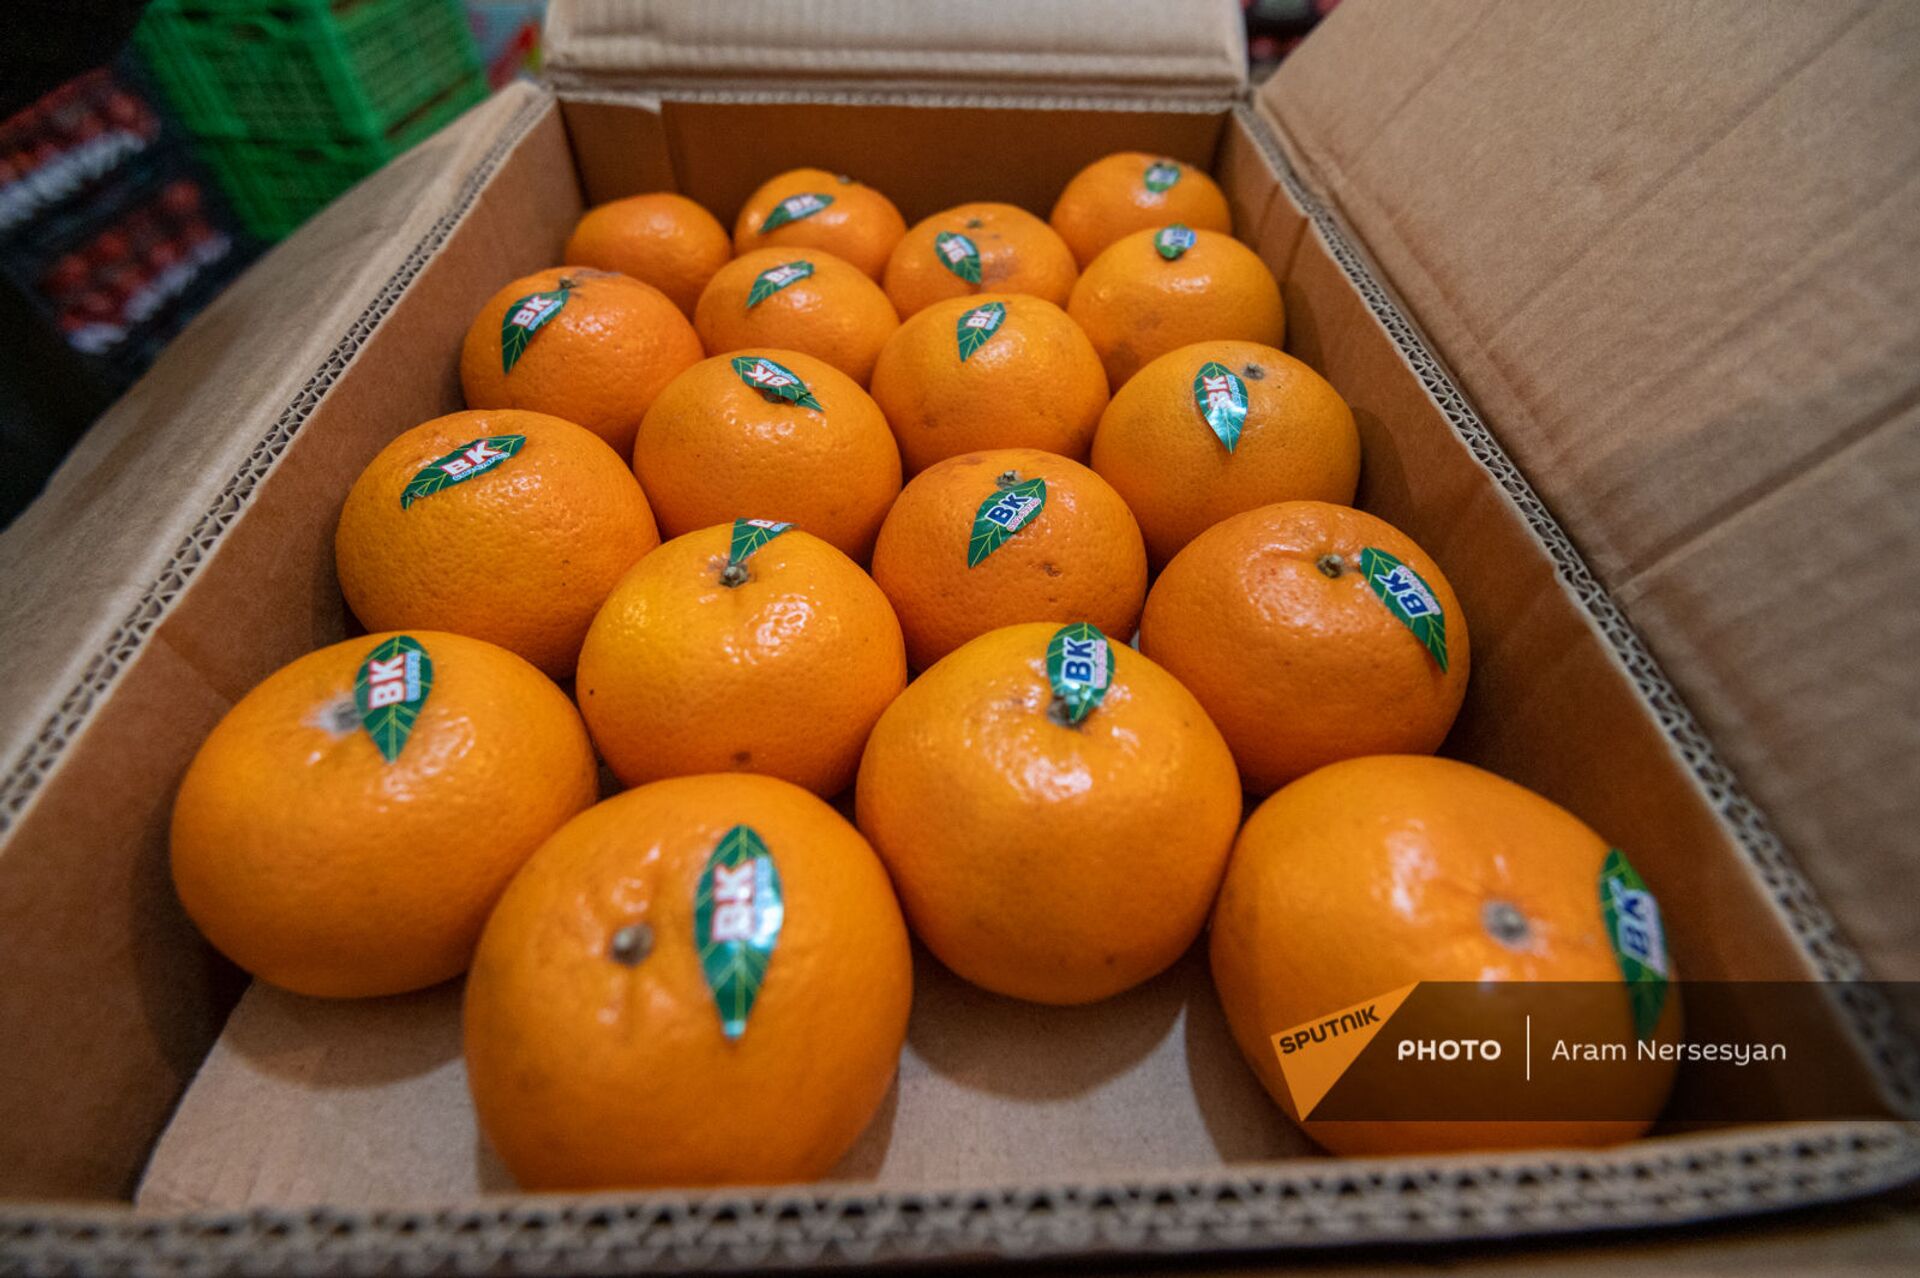 Пакистанские мандарины на овощном рынке в Ереване - Sputnik Армения, 1920, 11.02.2022